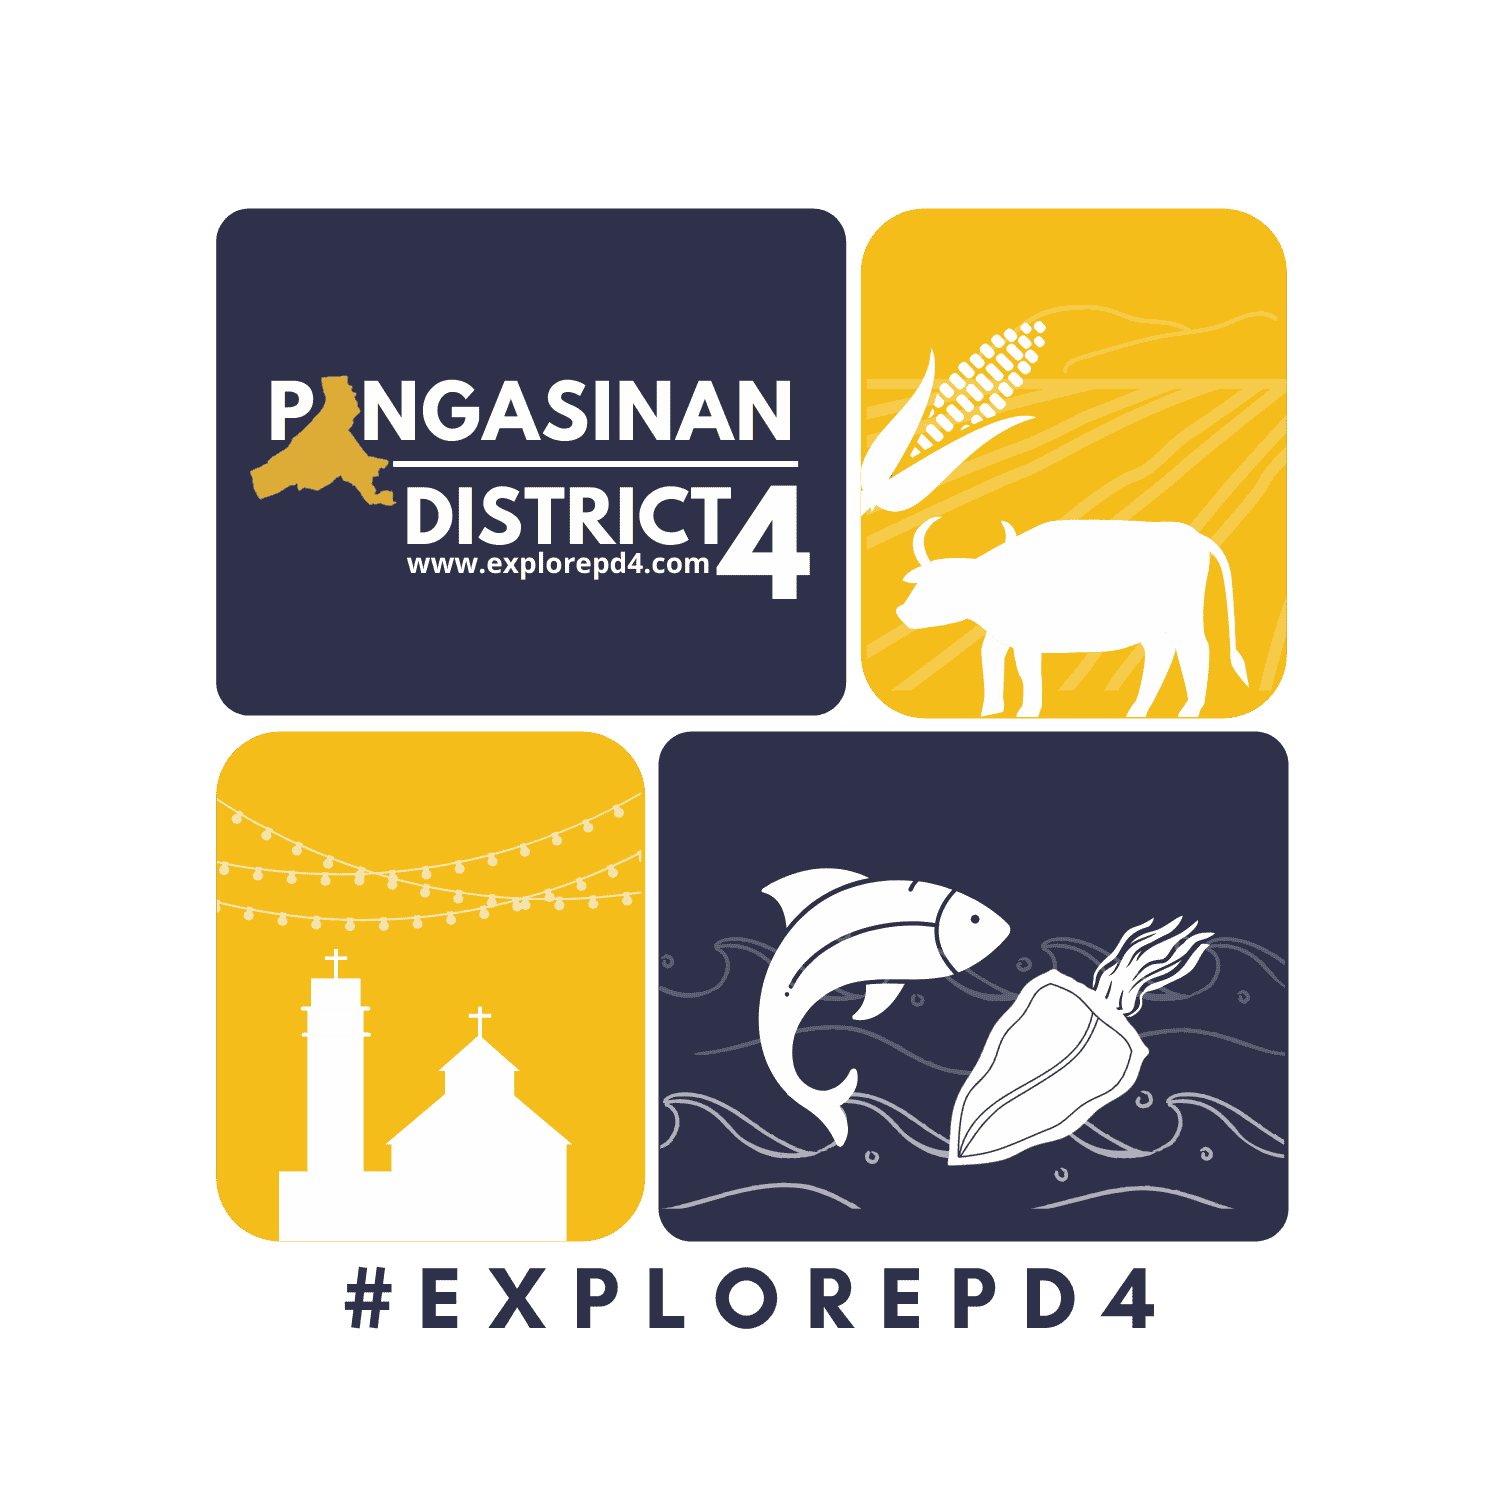 District 4 Pangasinan